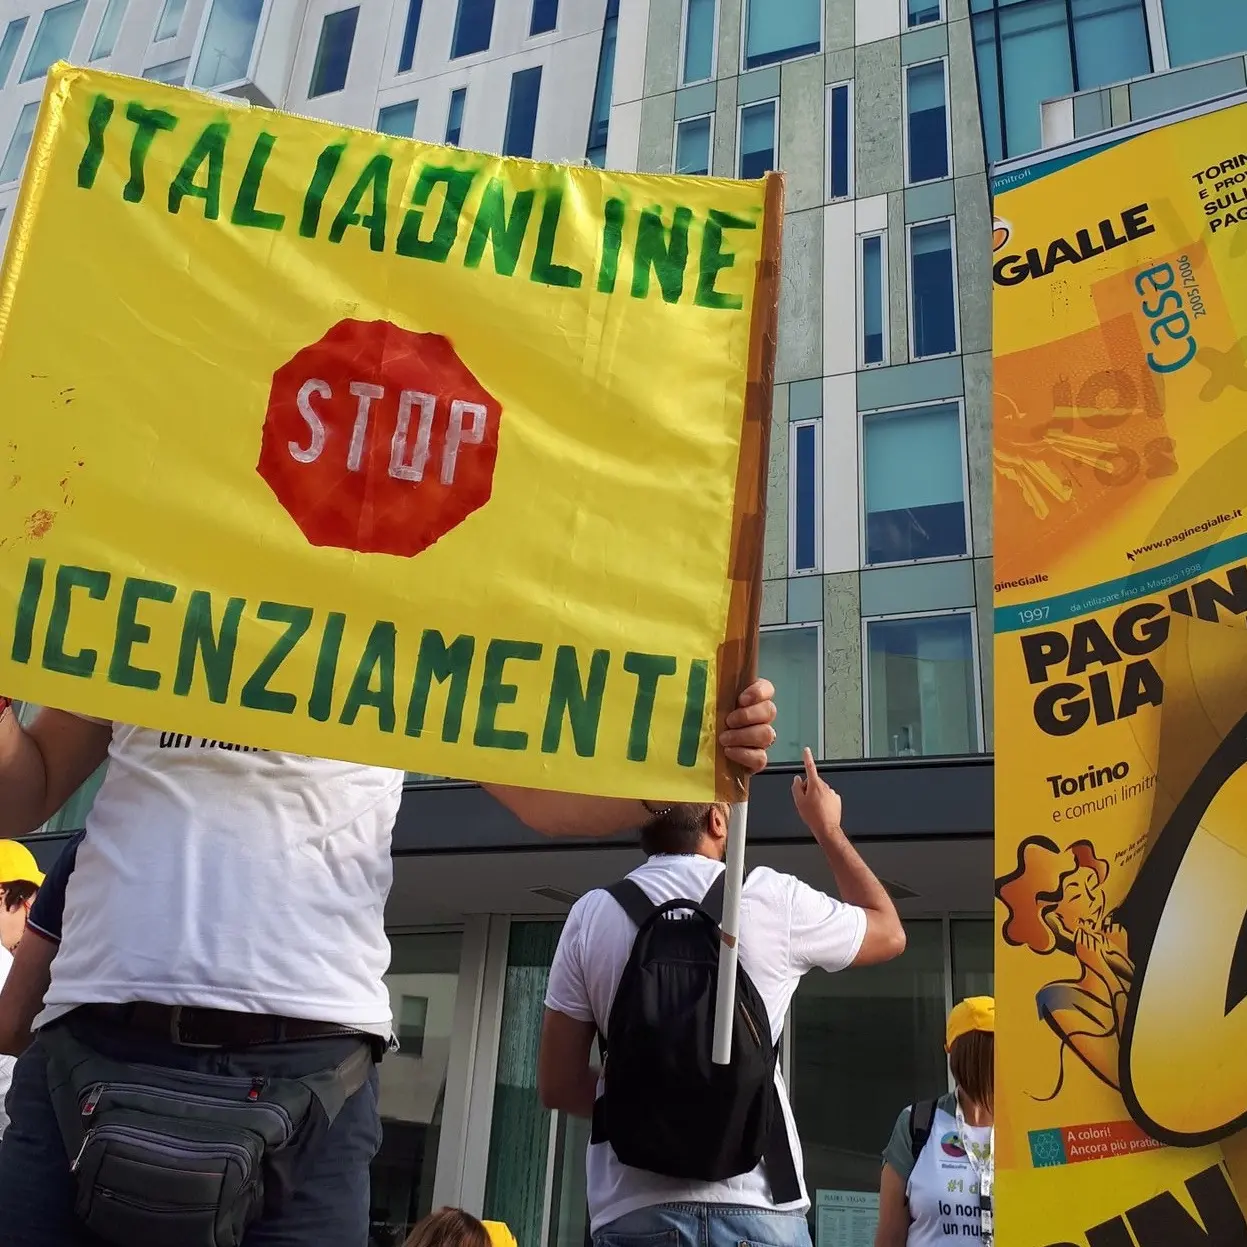 Italiaonline, proclamati altri due giorni di sciopero